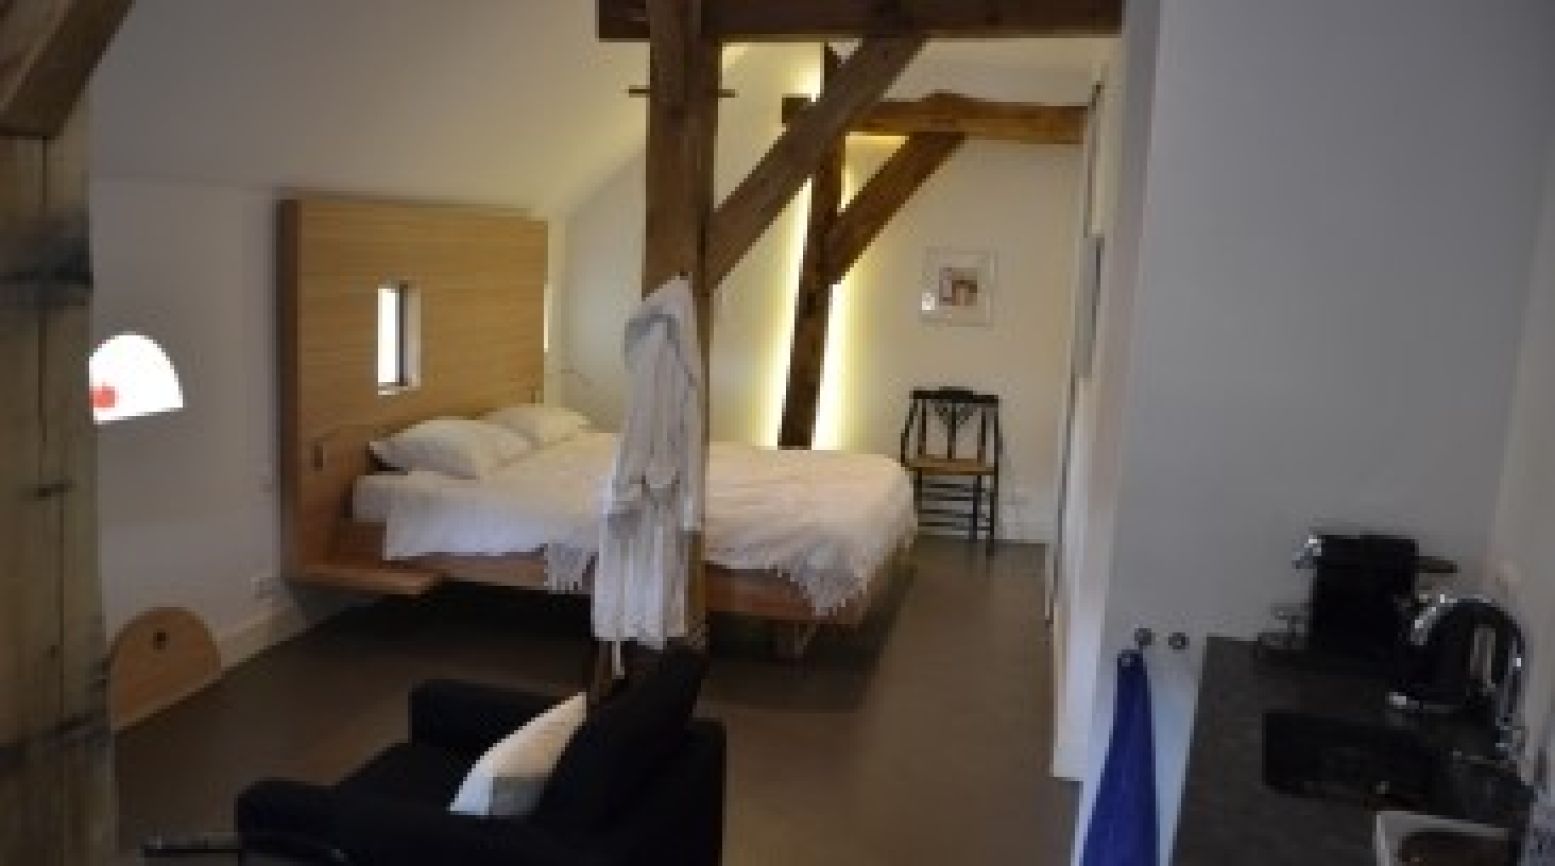 De luxe Suite 3, waar we een heerlijke nacht doorbrengen. Foto: DagjeWeg.NL